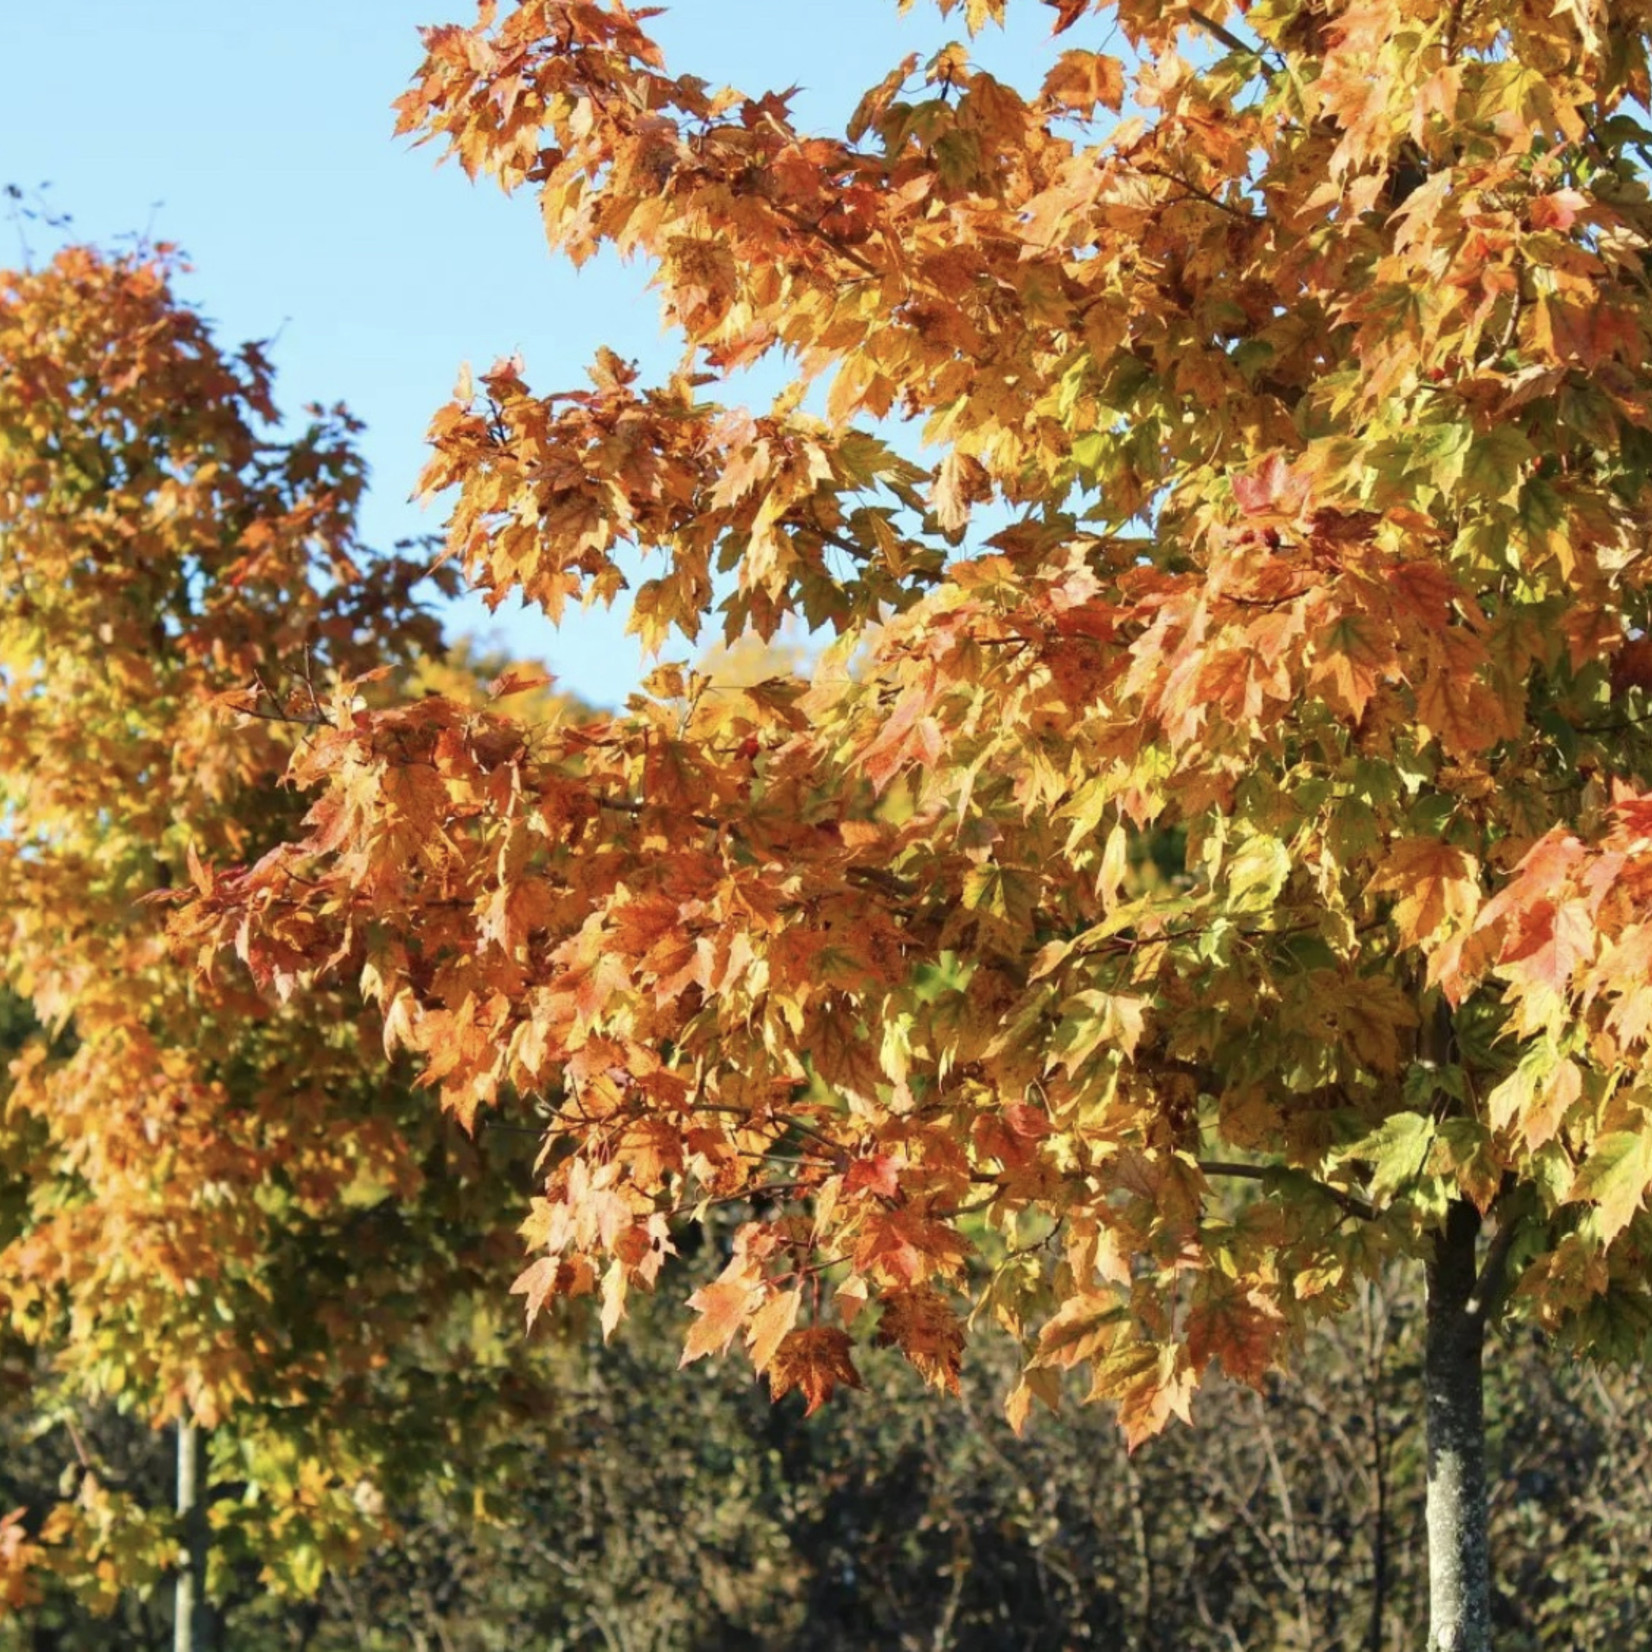 Acer rubrum 'Franksred' / Red Sunset Maple